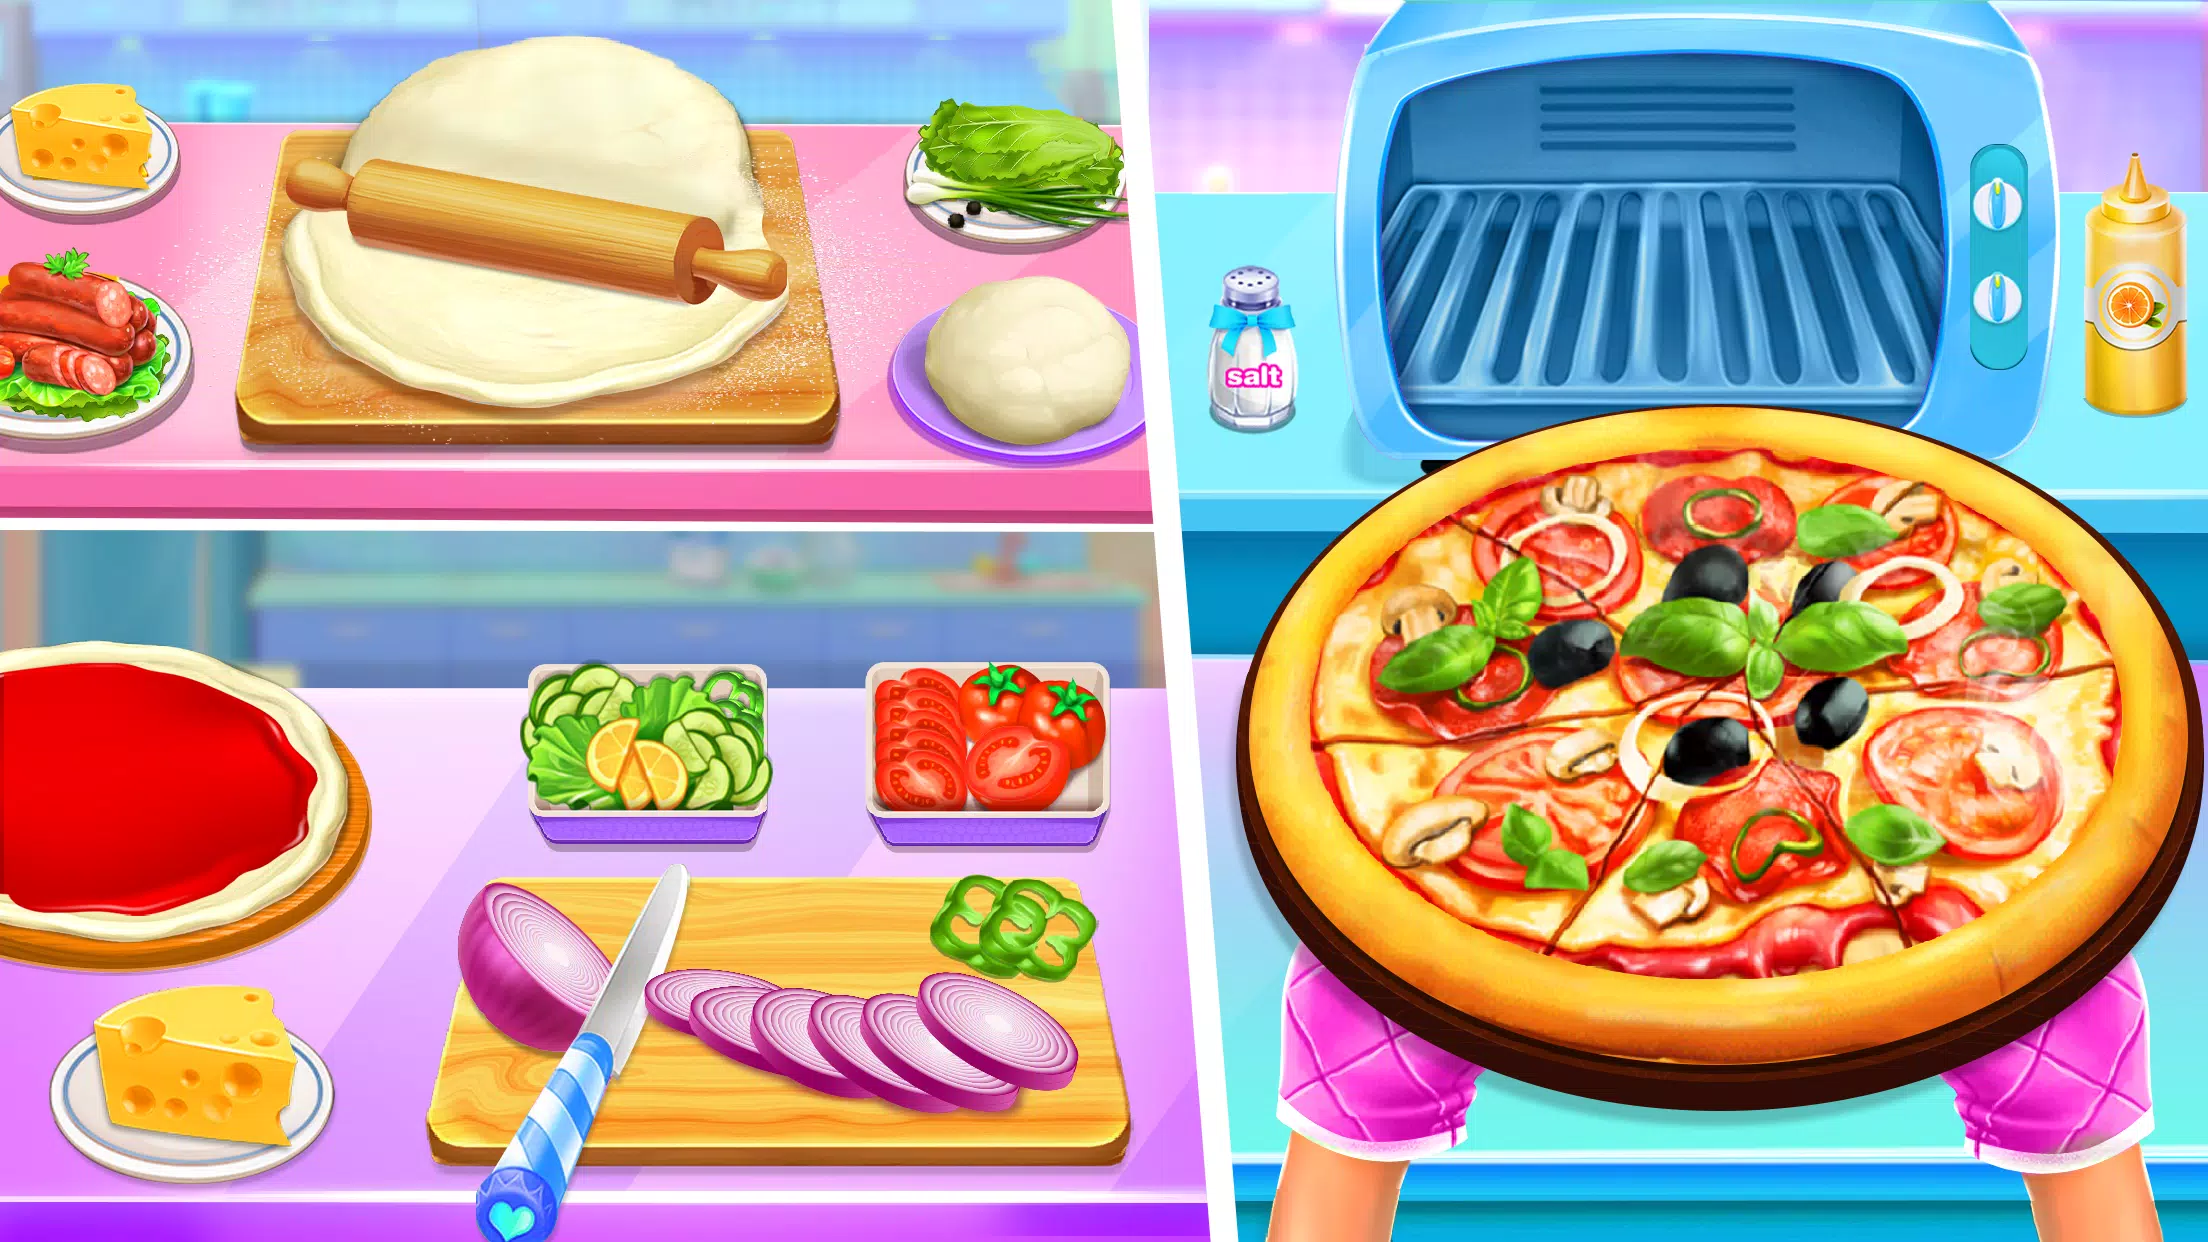 Jogos de culinária fazer pizza na App Store